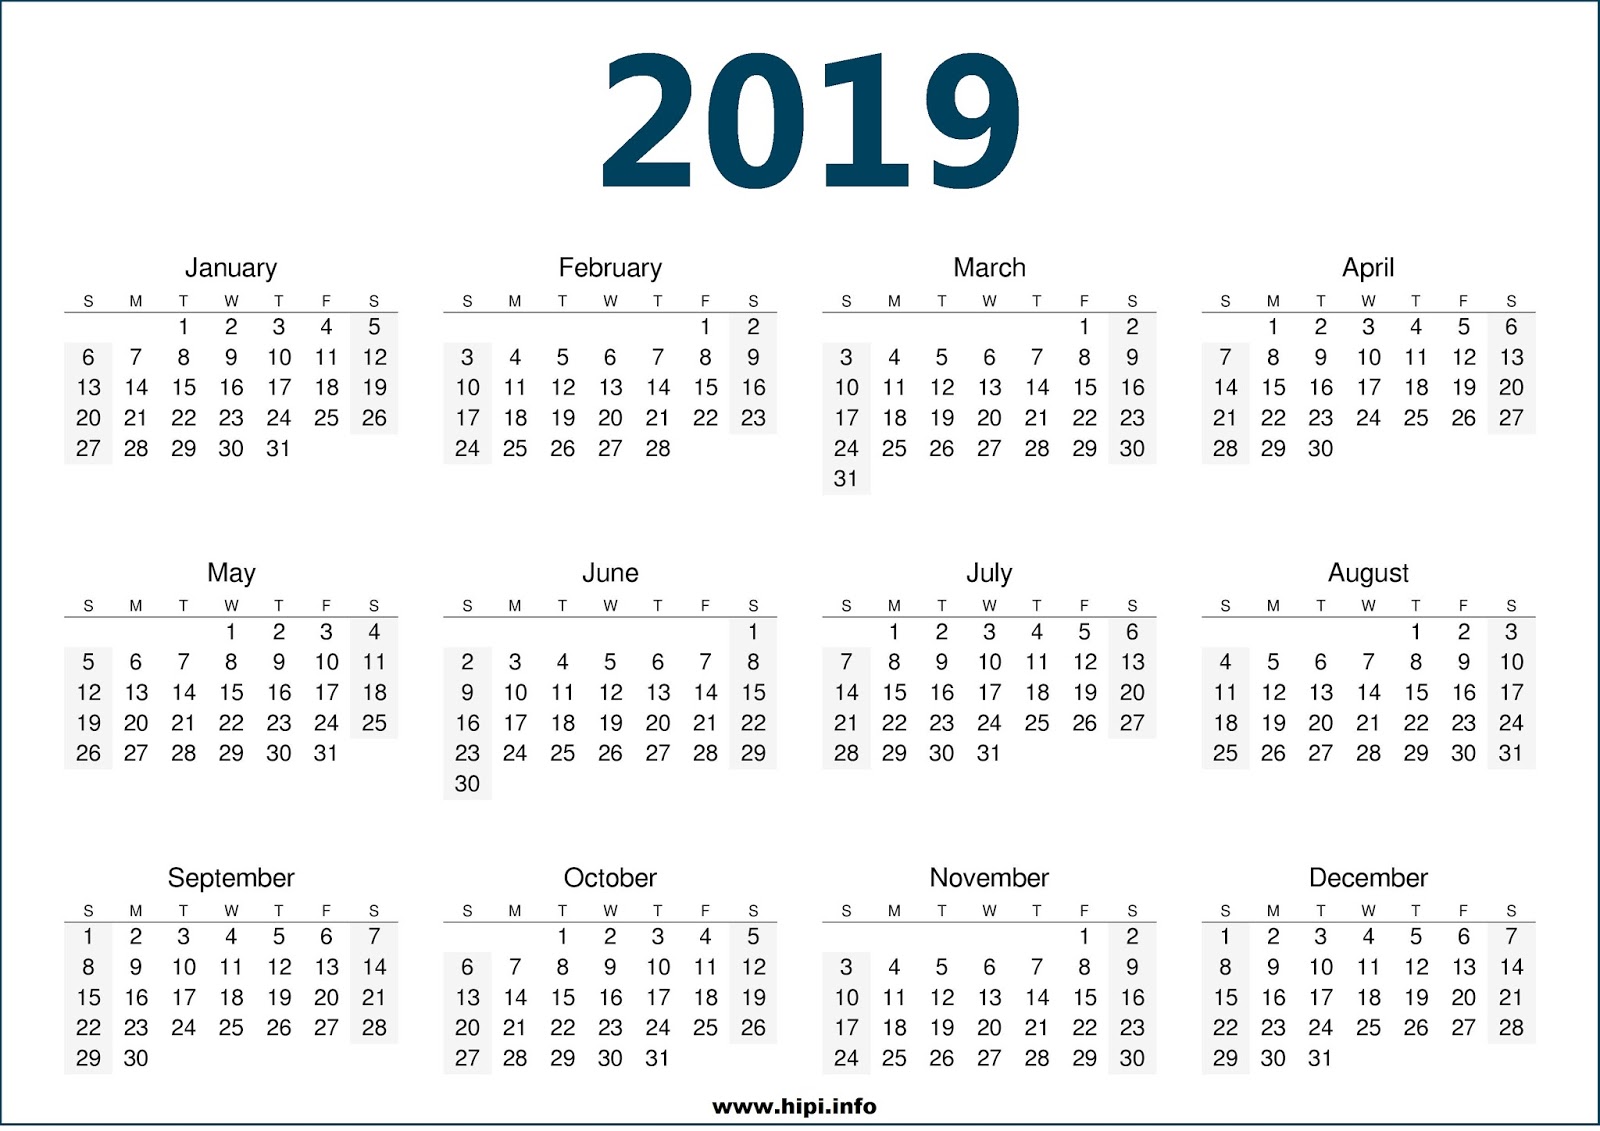 printables-planner-december-2019-calendar-monthly-weekly-planner-iamgeetha